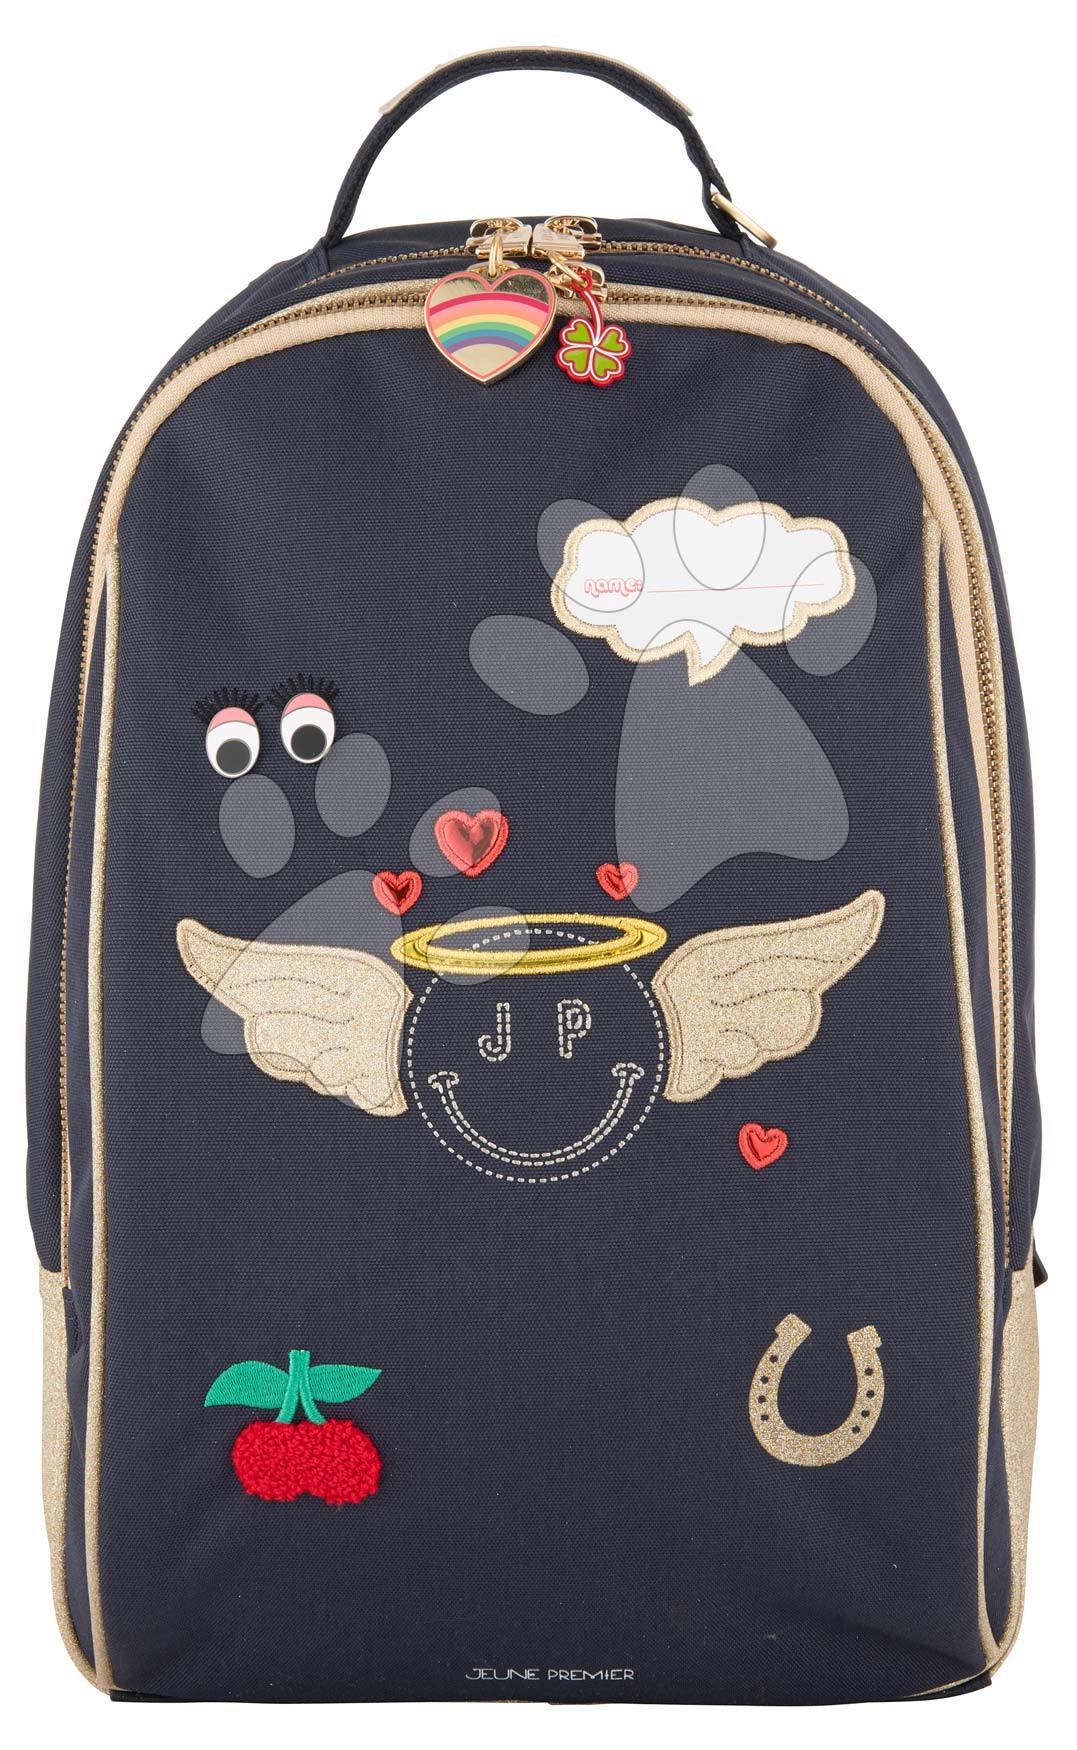 Školské tašky a batohy - Školská taška batoh Backpack James Miss Gadget Jeune Premier ergonomický luxusné prevedenie 42*30 cm